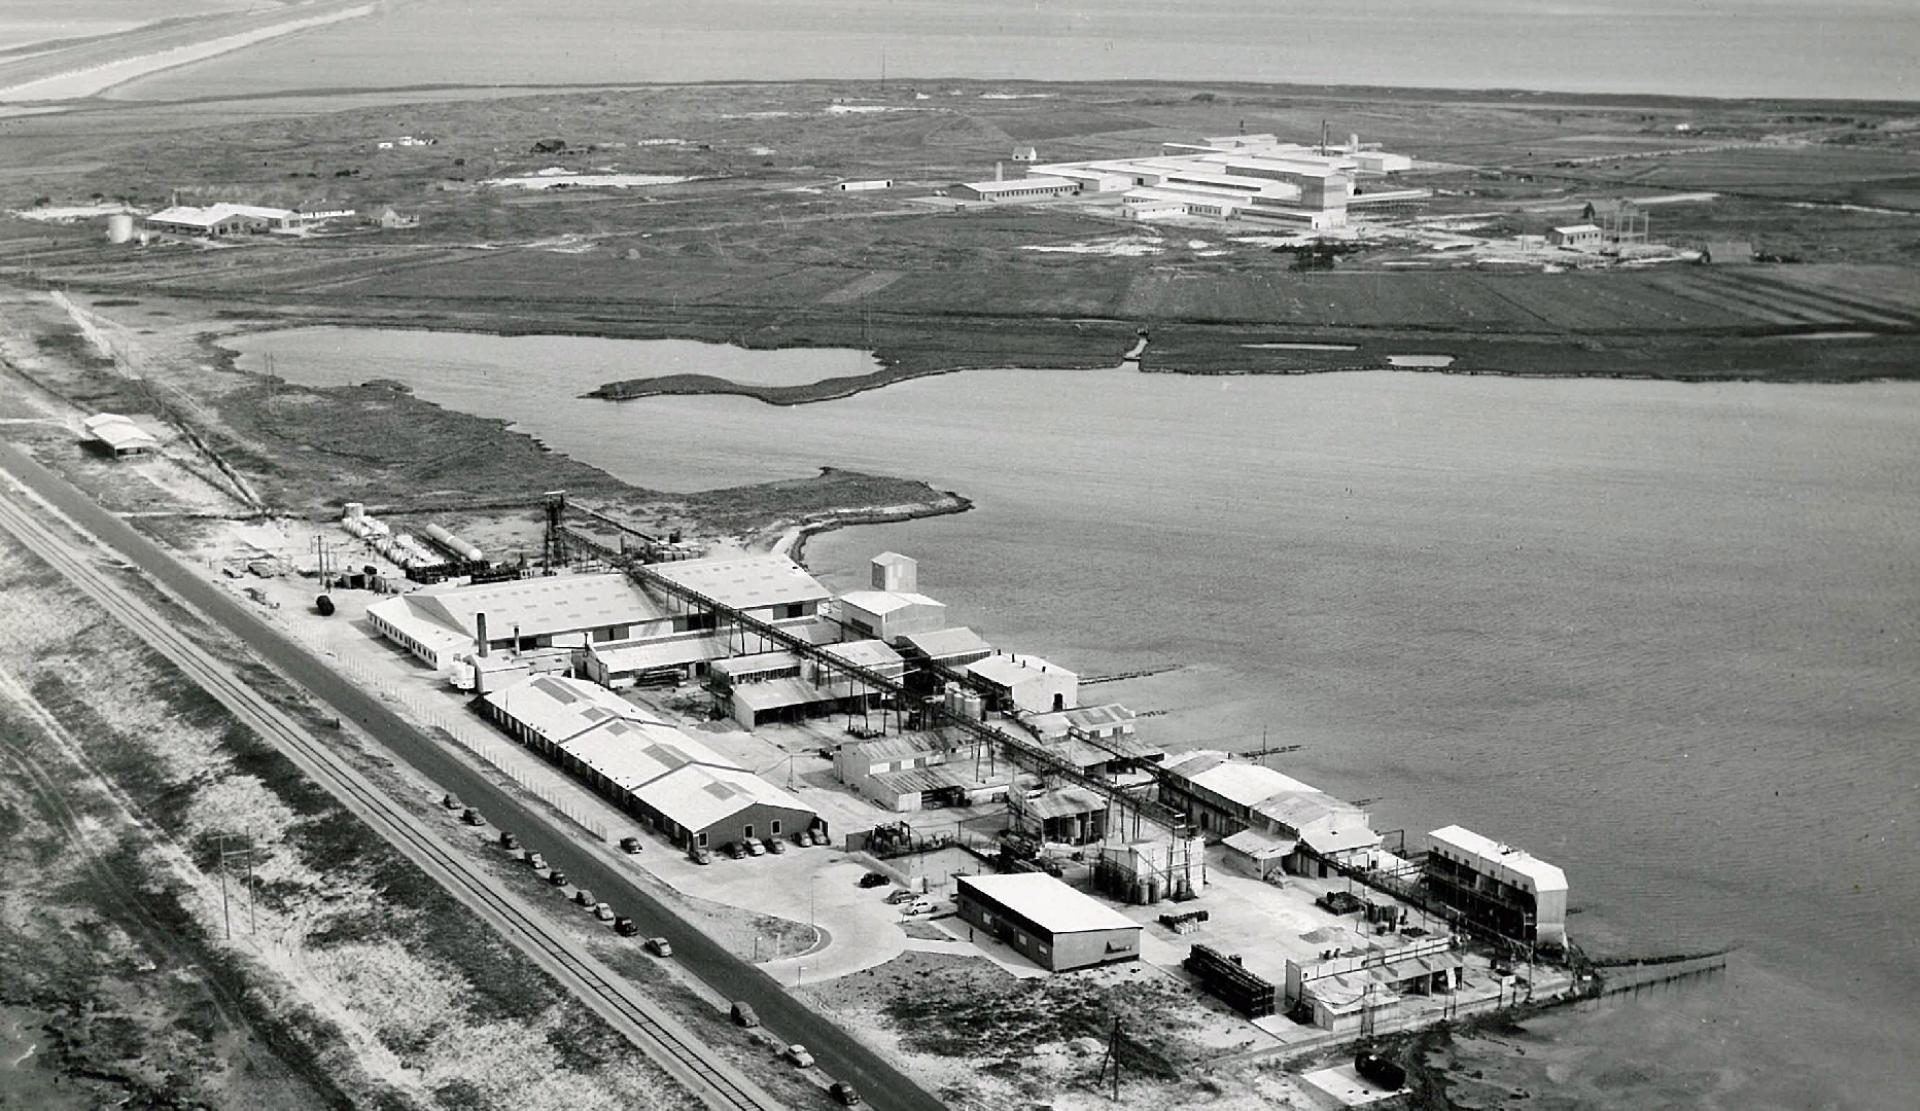 Cheminova lukker sin fabrik i Måløv ved København og flytter produktionen til Harboøre Tange i 1953. I 1958 kommer der stigende opmærksomhed på en potentiel forurening, da lokale klager over lugt og afsmag i fisk. Cheminovas hhv. nuværende og gamle fabriksgrund er også forurenet. Arkivfoto: Region Midtjylland